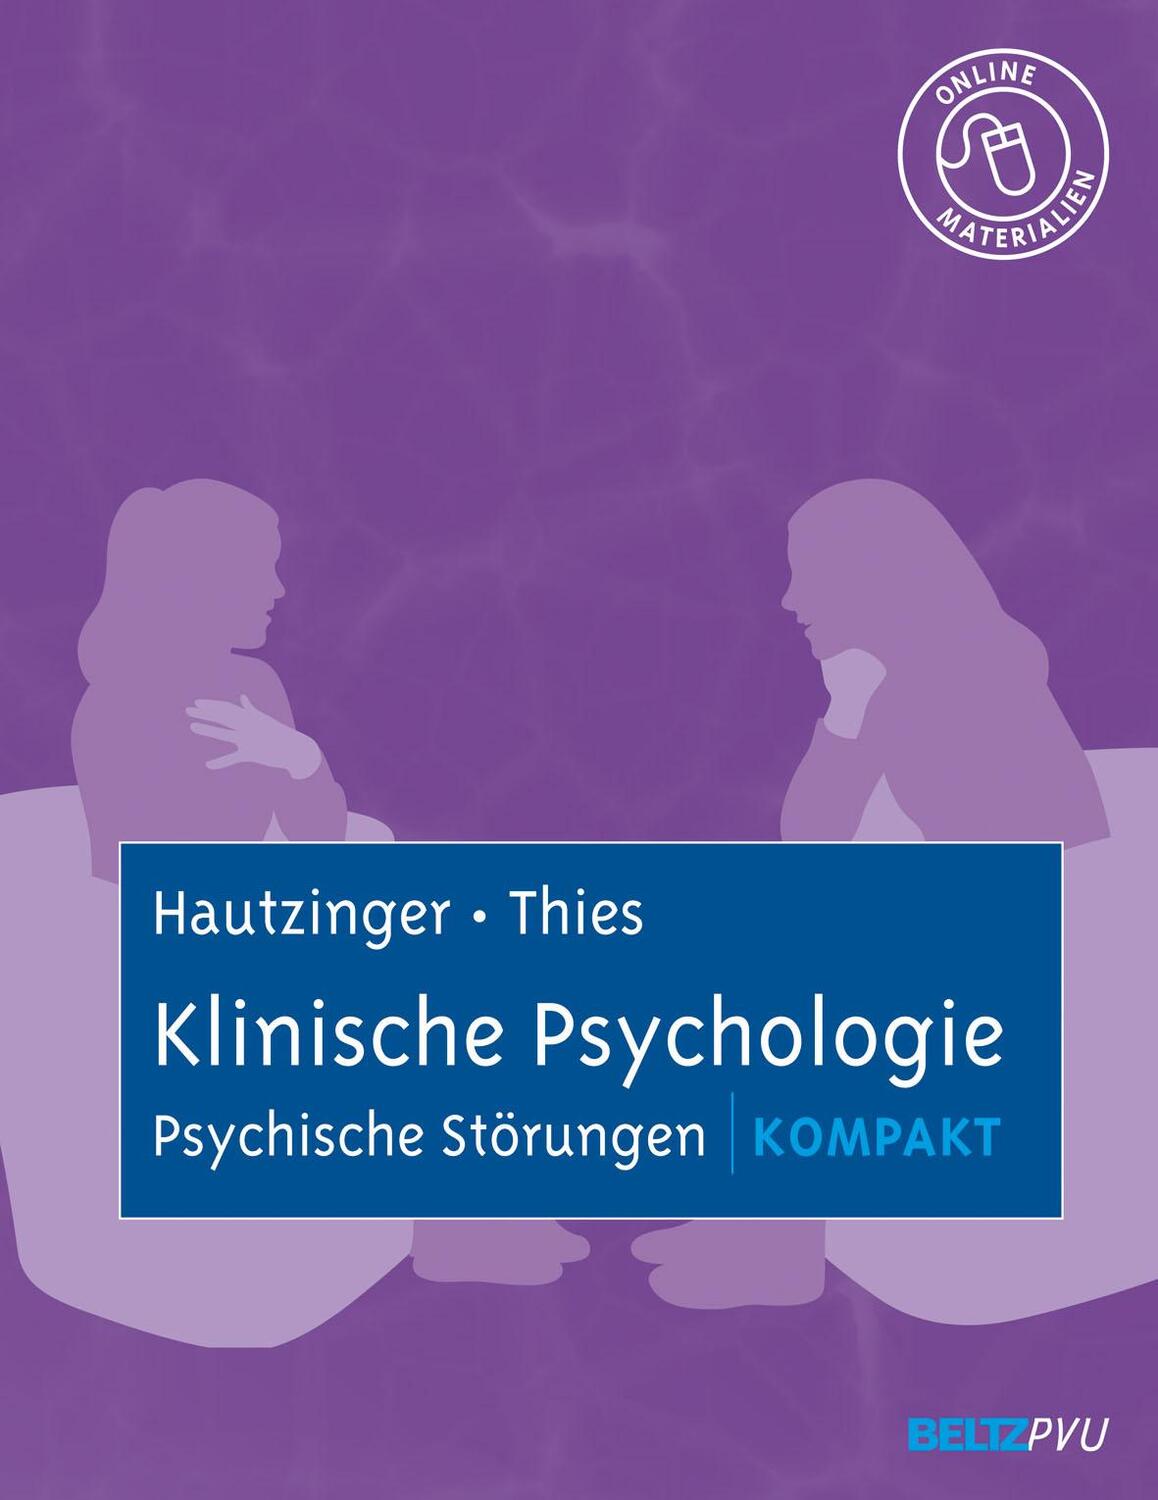 Klinische Psychologie: Psychische Störungen kompakt - Hautzinger, Martin